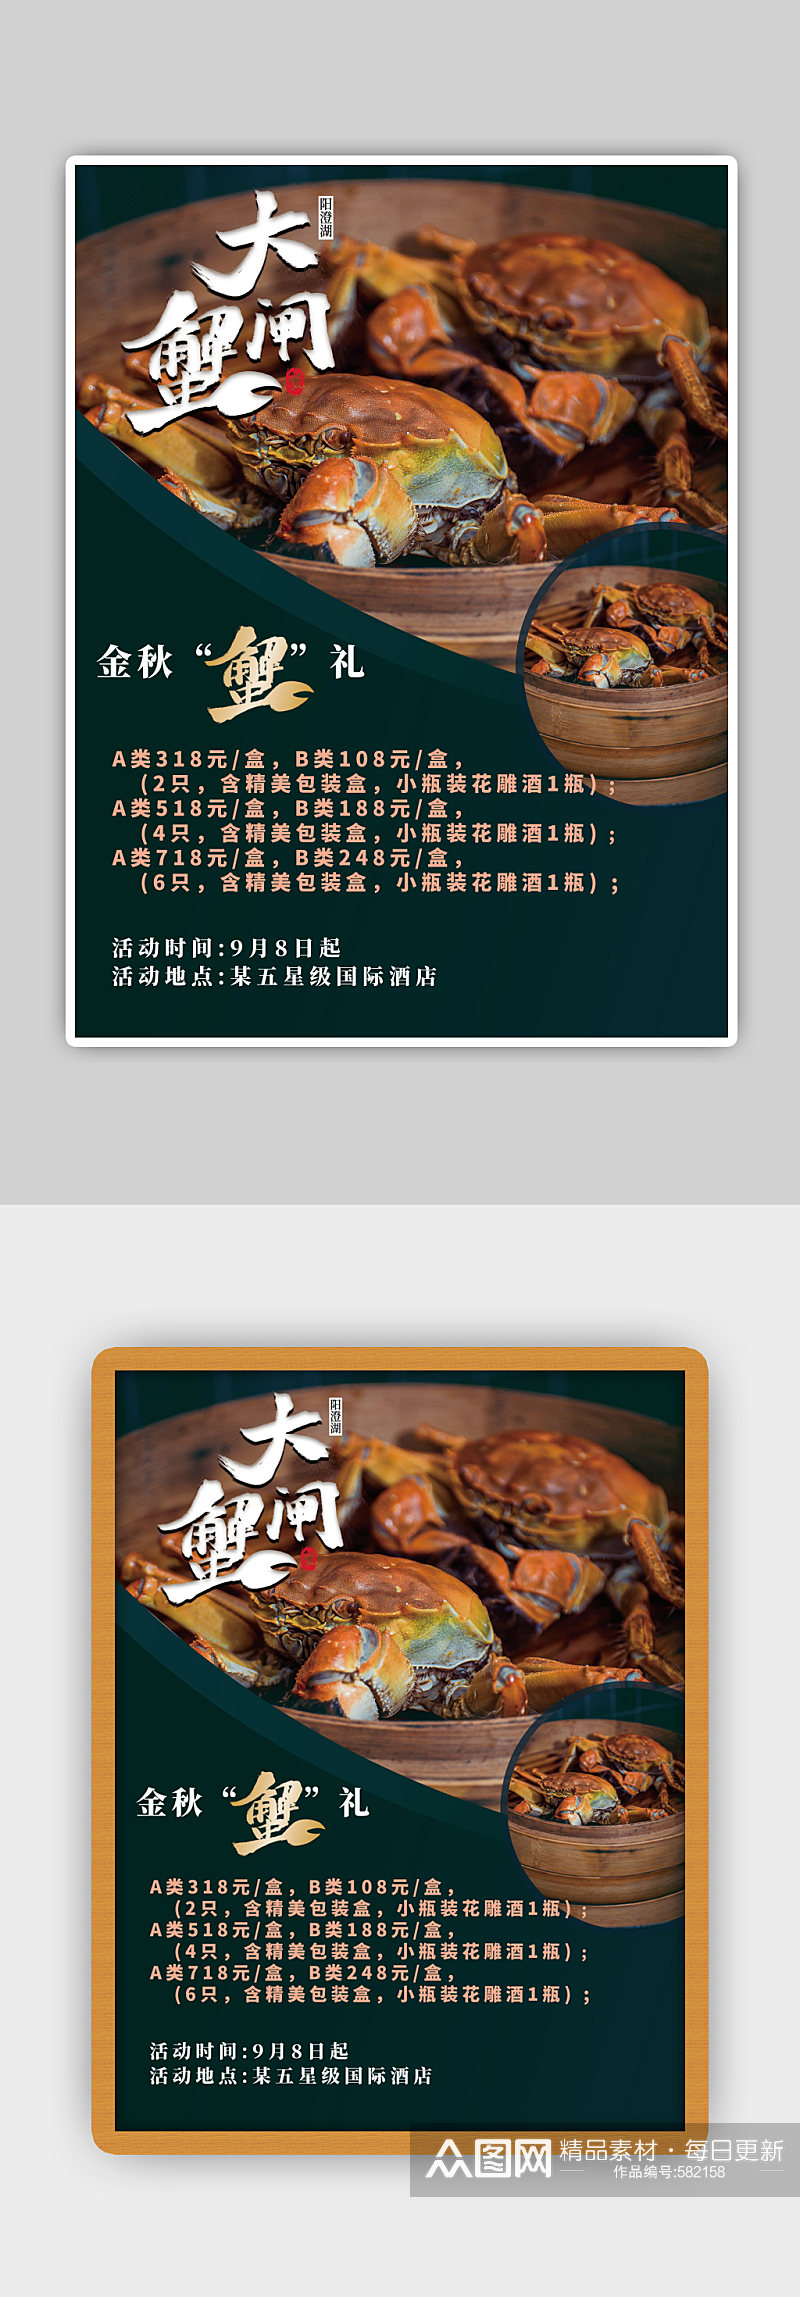 大闸蟹海鲜螃蟹海报古典中国风素材